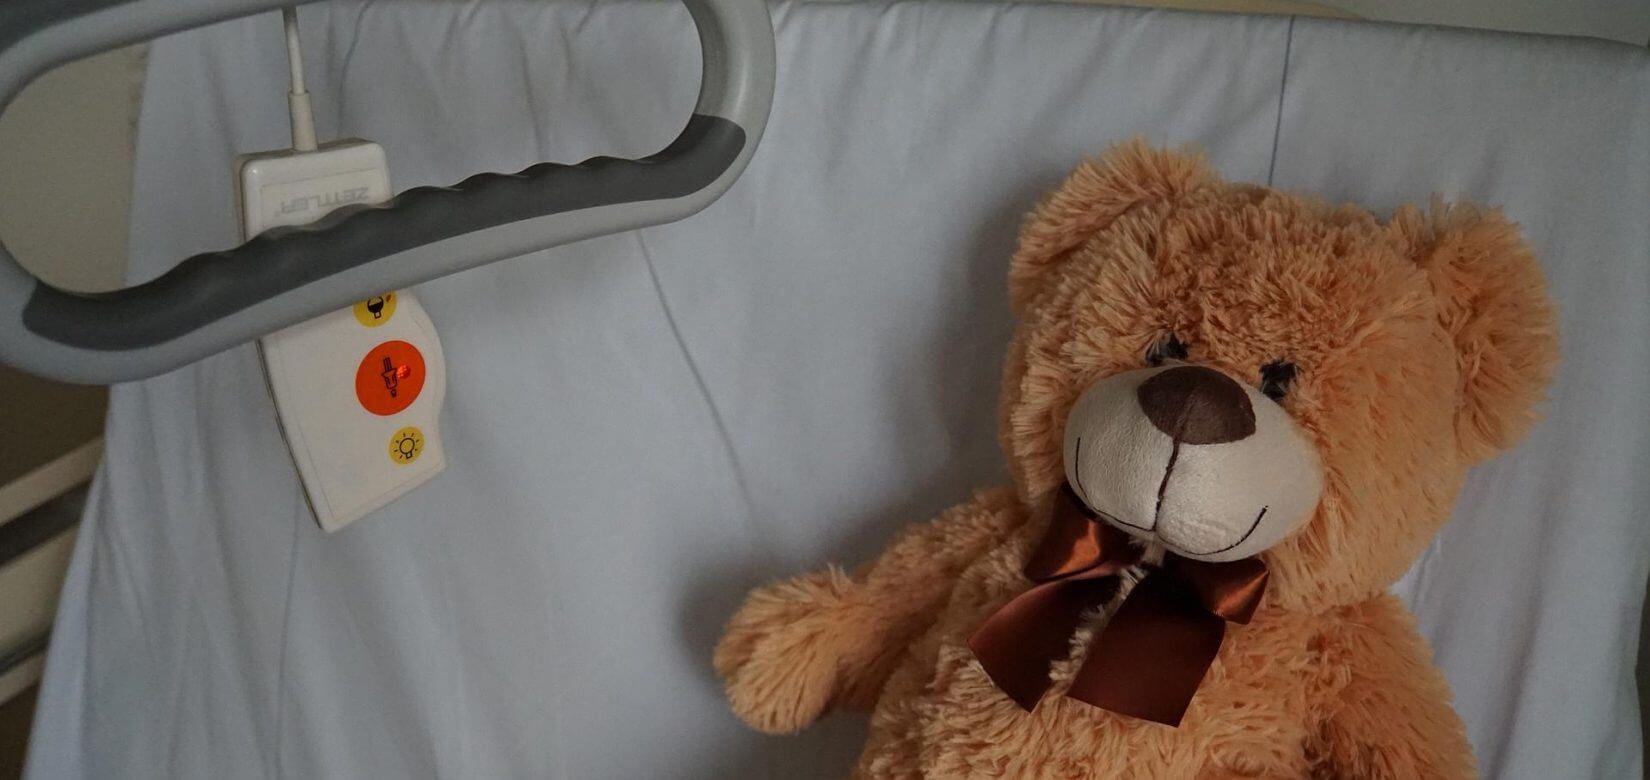 Θλίψη: Έσβησε 3χρονη σε νοσοκομείο - Οι γιατροί δεν μπόρεσαν να εντοπίσουν από τι έπασχε